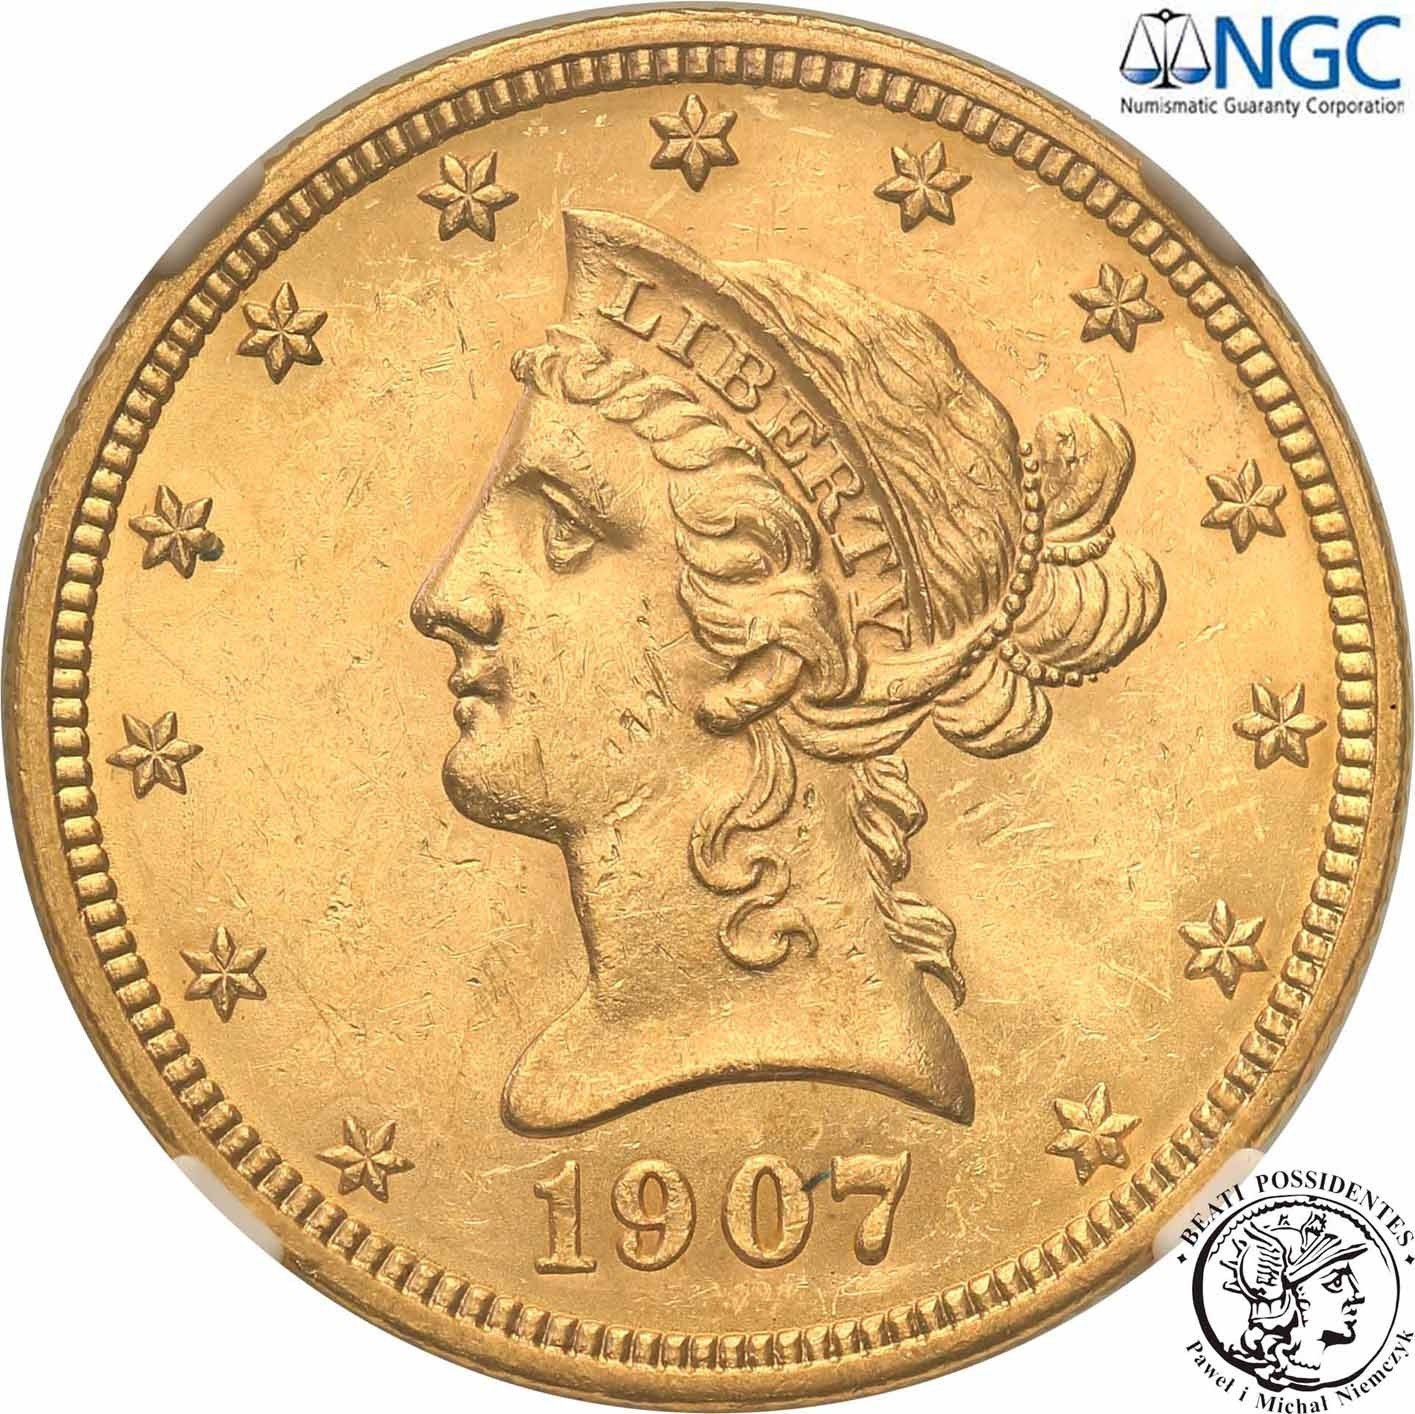 USA 10 dolarów 1907 Liberty NGC MS62 PIĘKNE